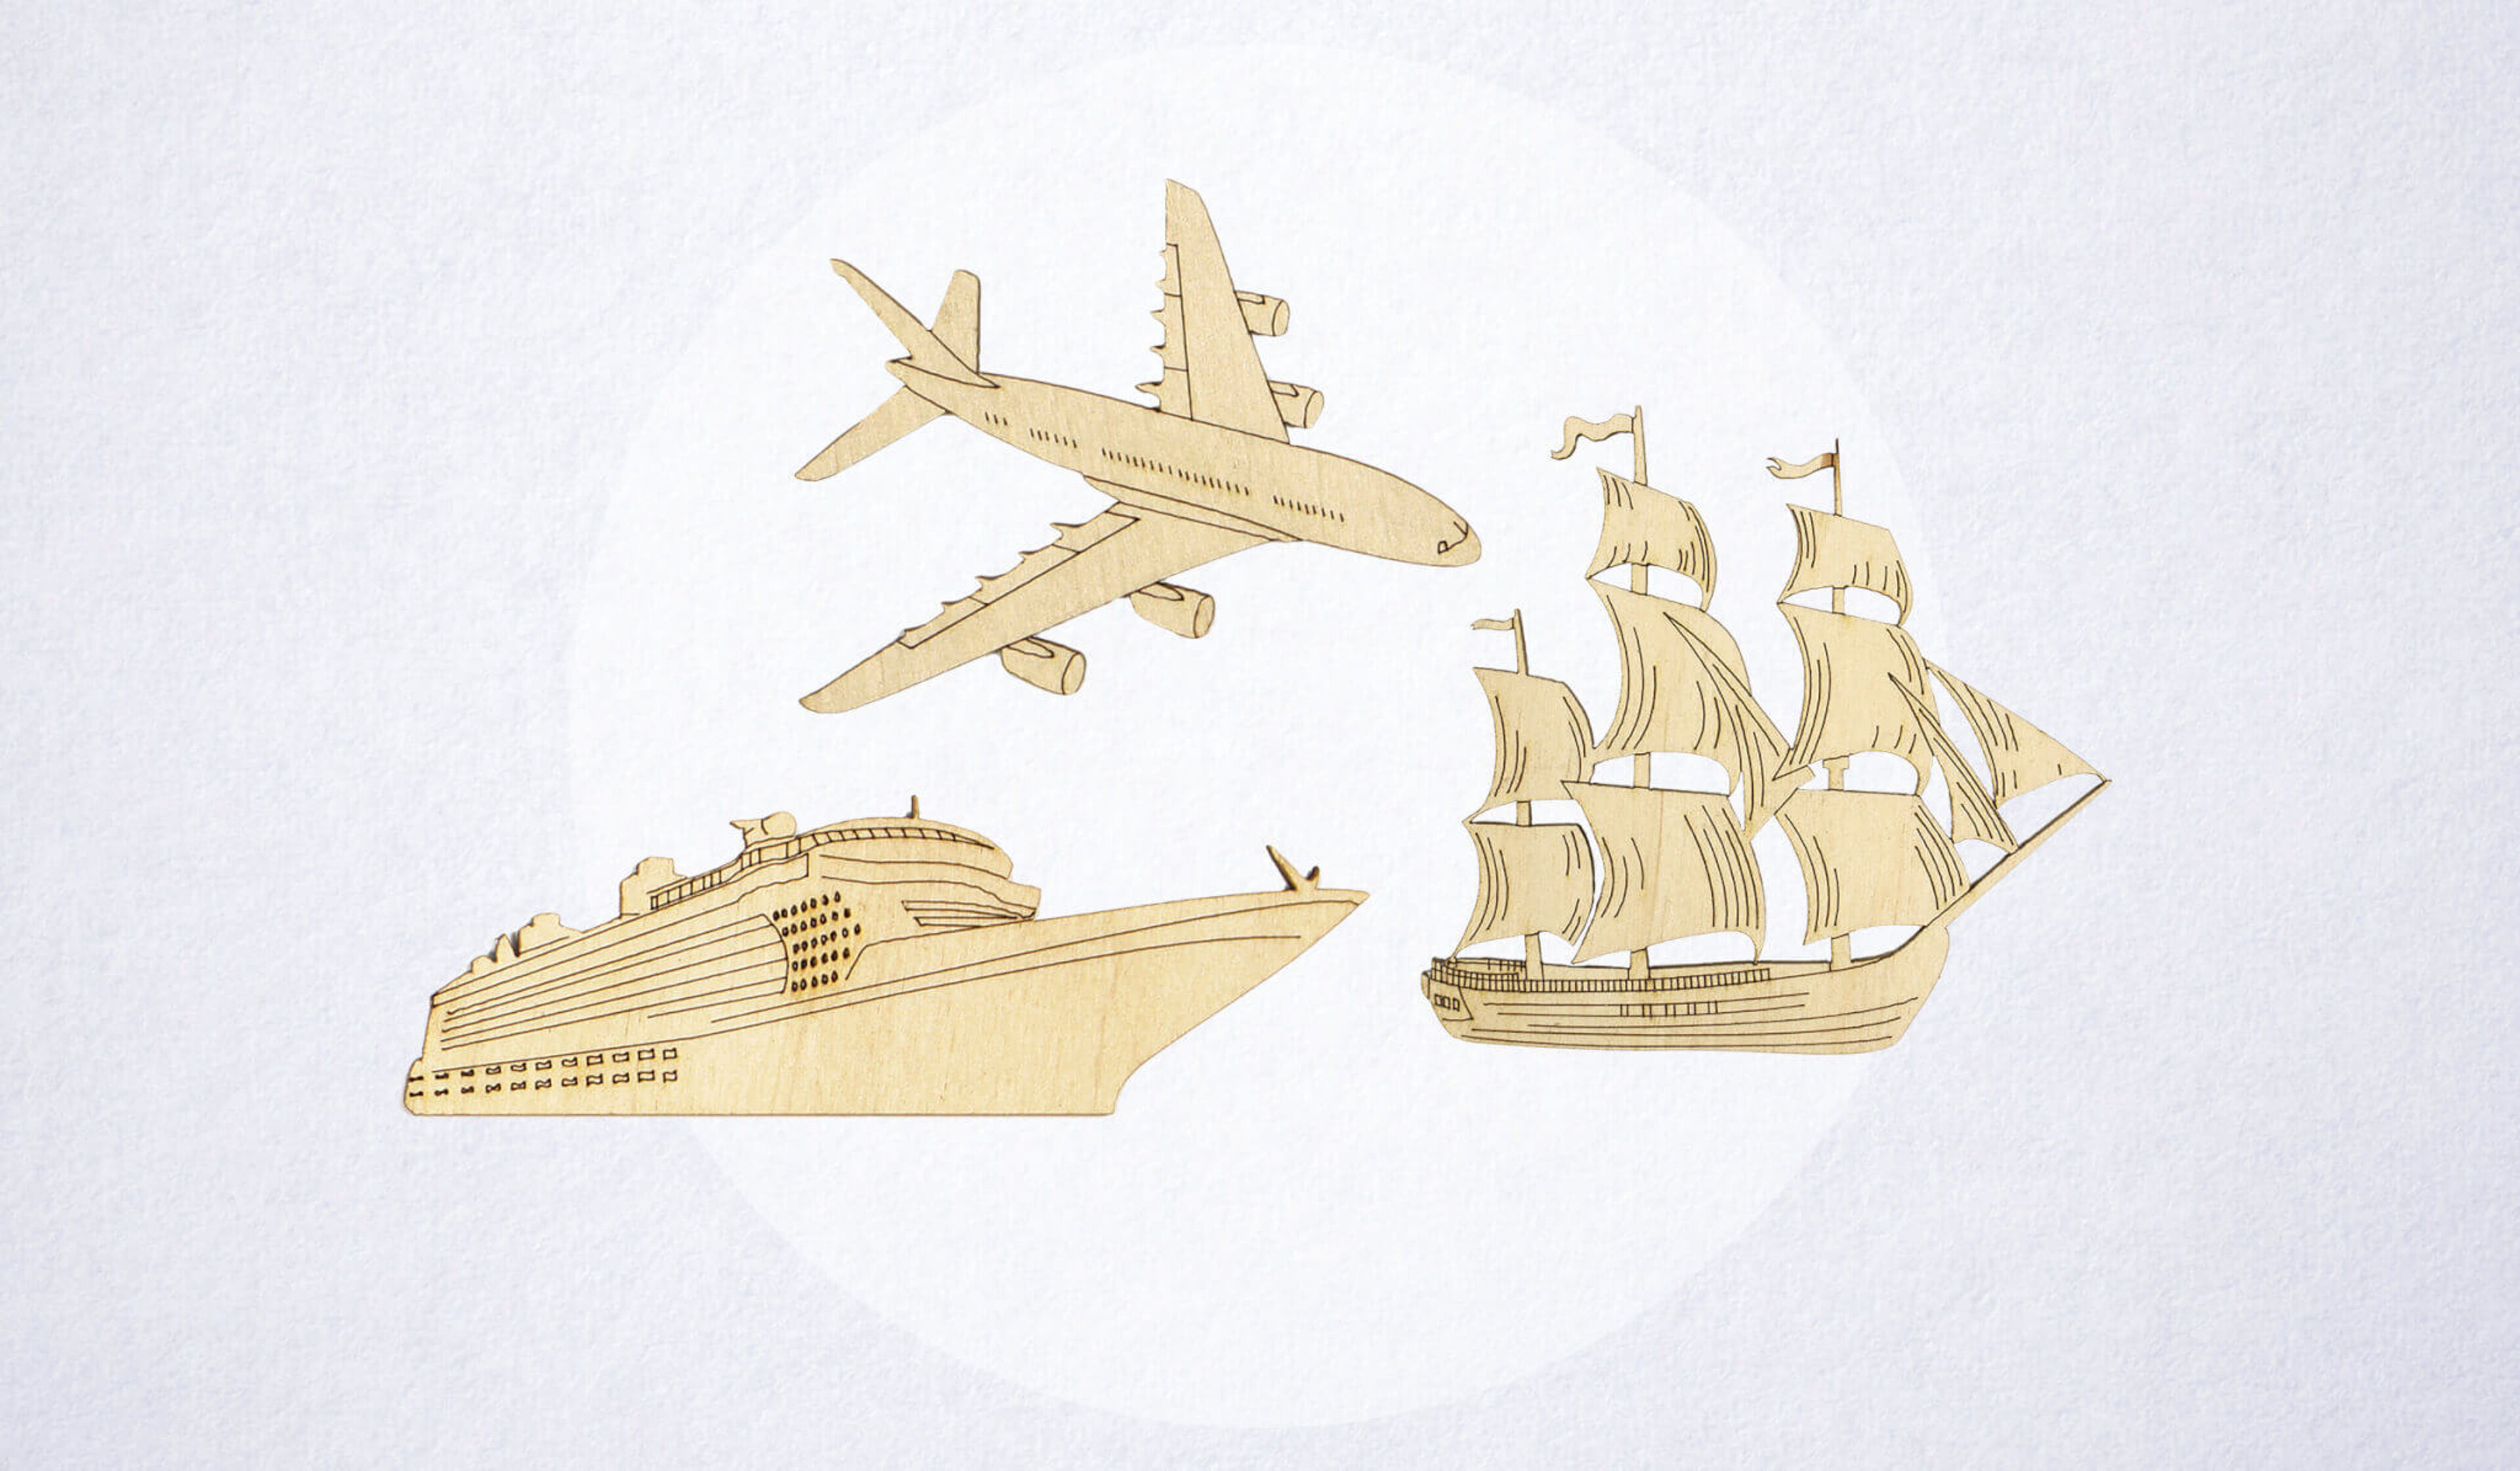 Wooden Ships, Sailing Boats and Aeroplanes